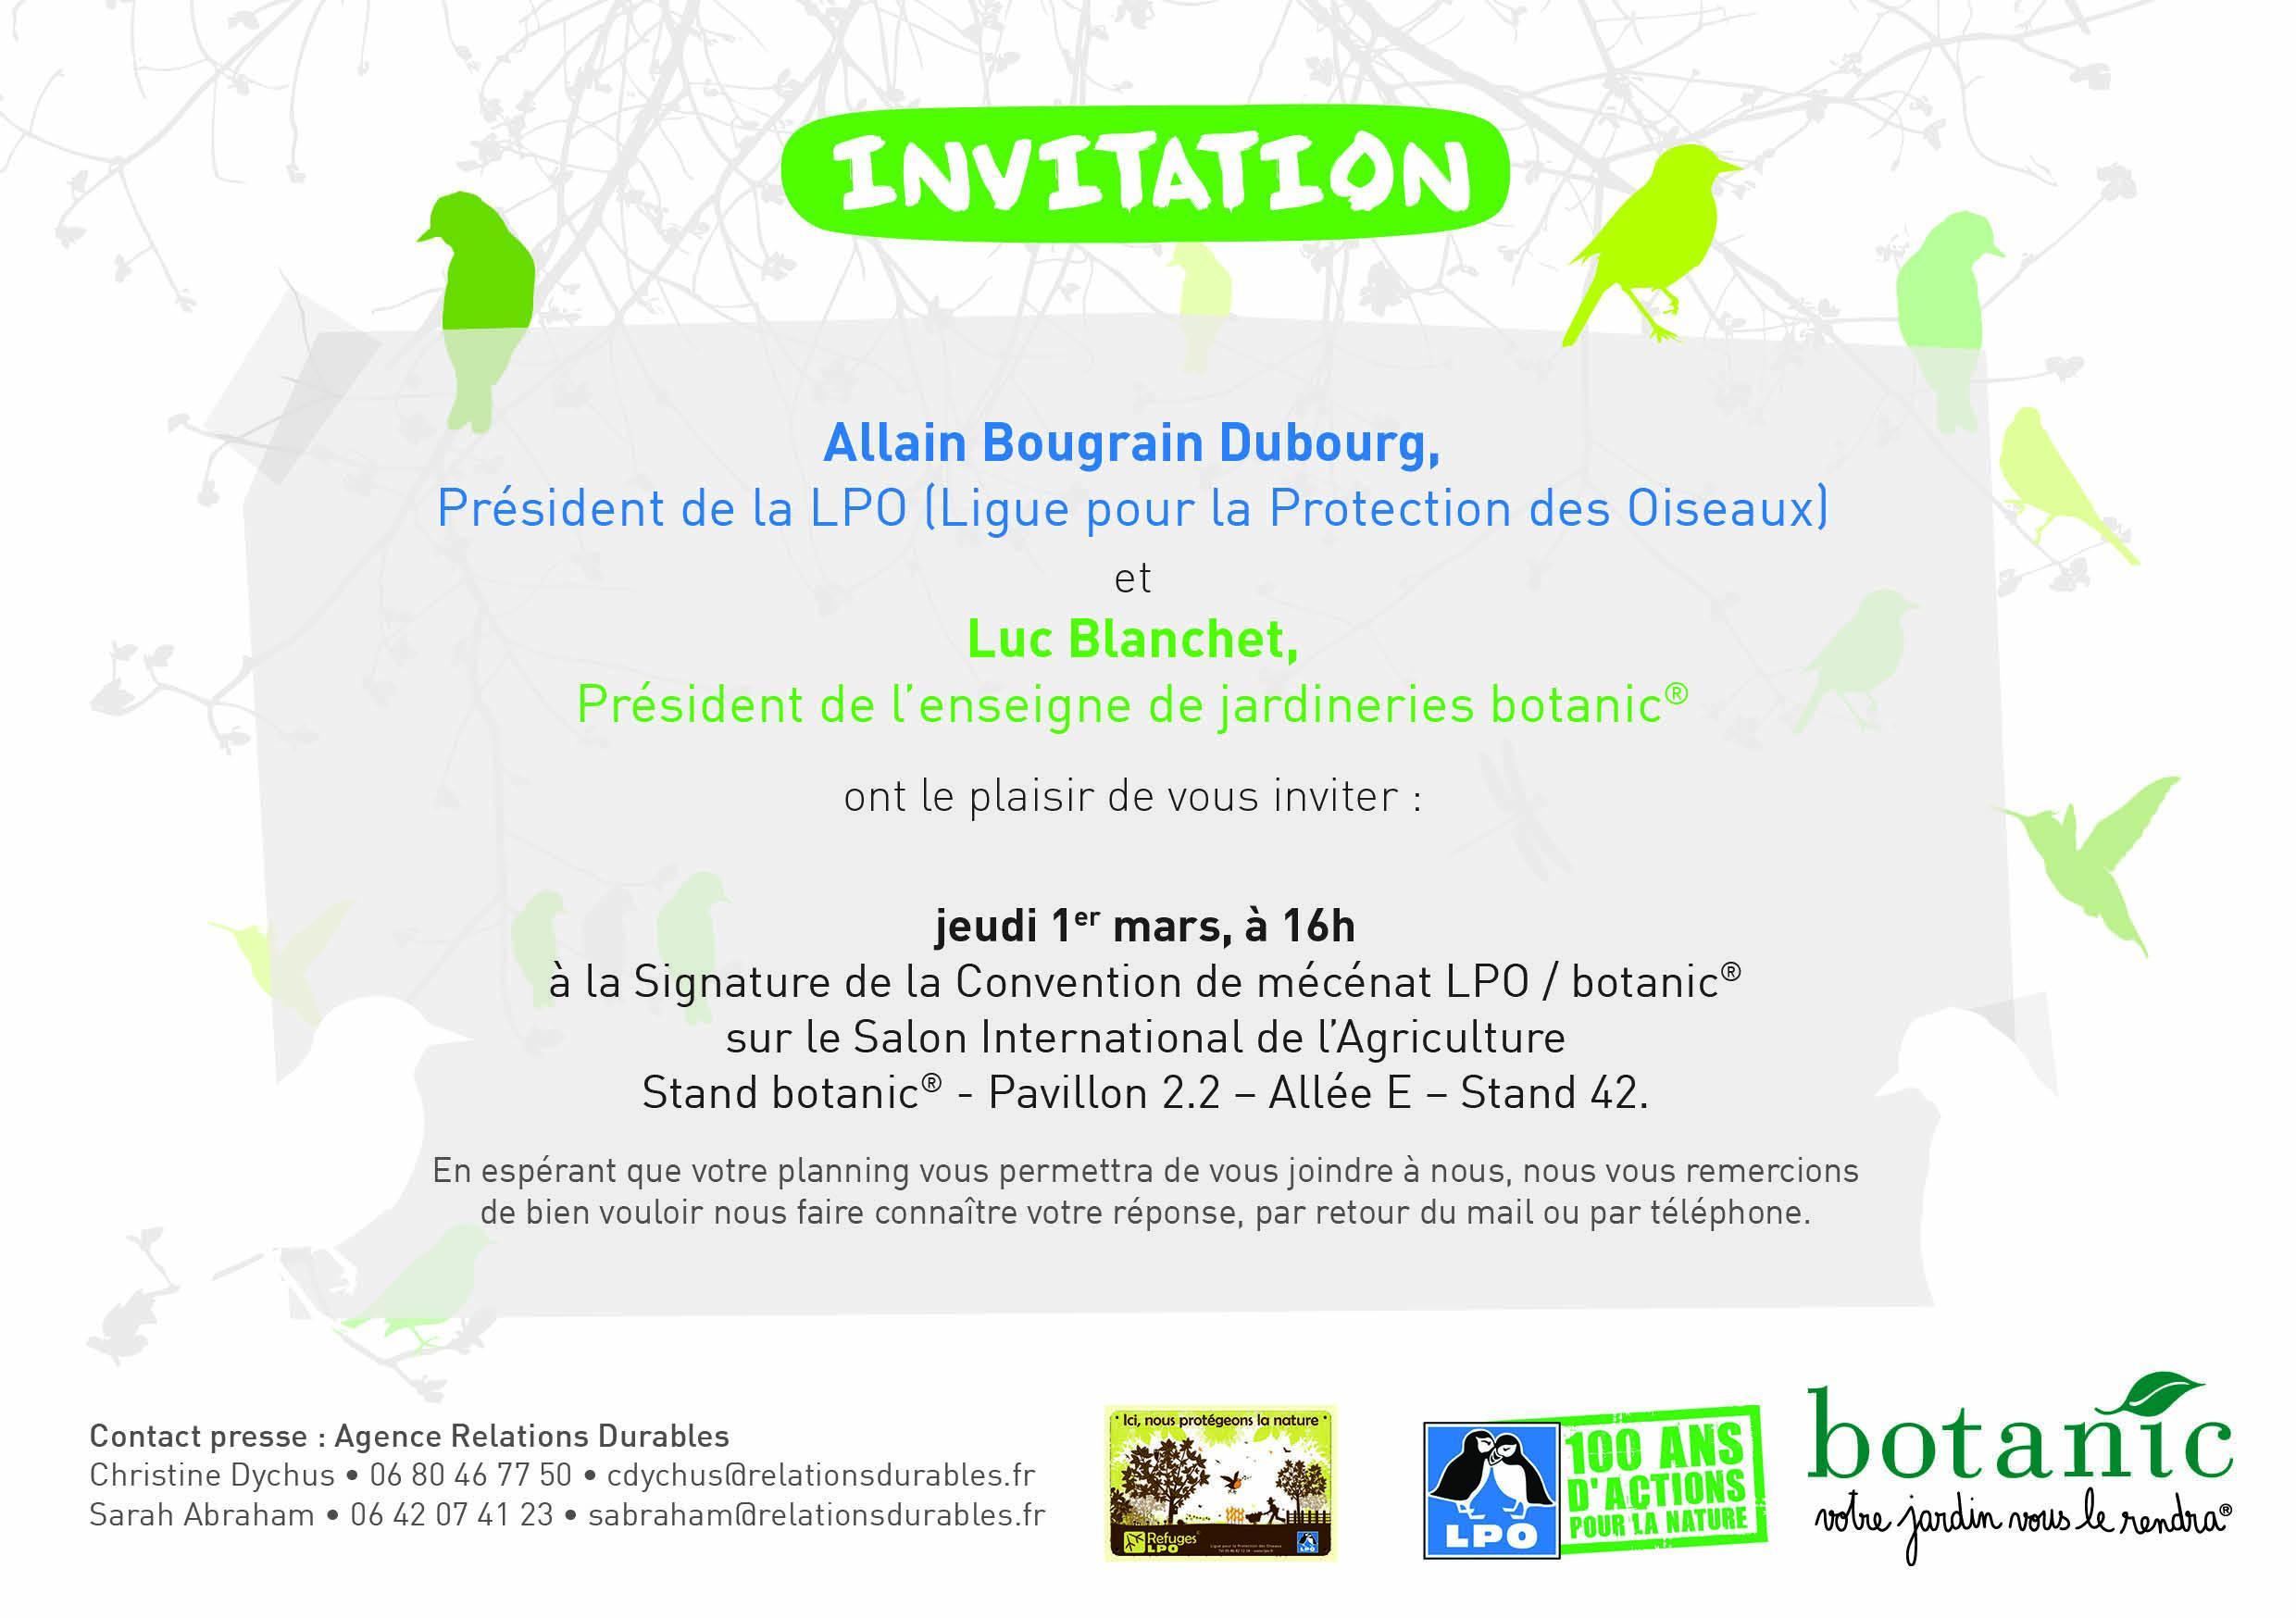 La LPO (Ligue pour la Protection des Oiseaux) et l’enseigne de jardineries botanic® signent aujourd’hui un partenariat de mécénat sur le Salon de l’Agriculture à Paris